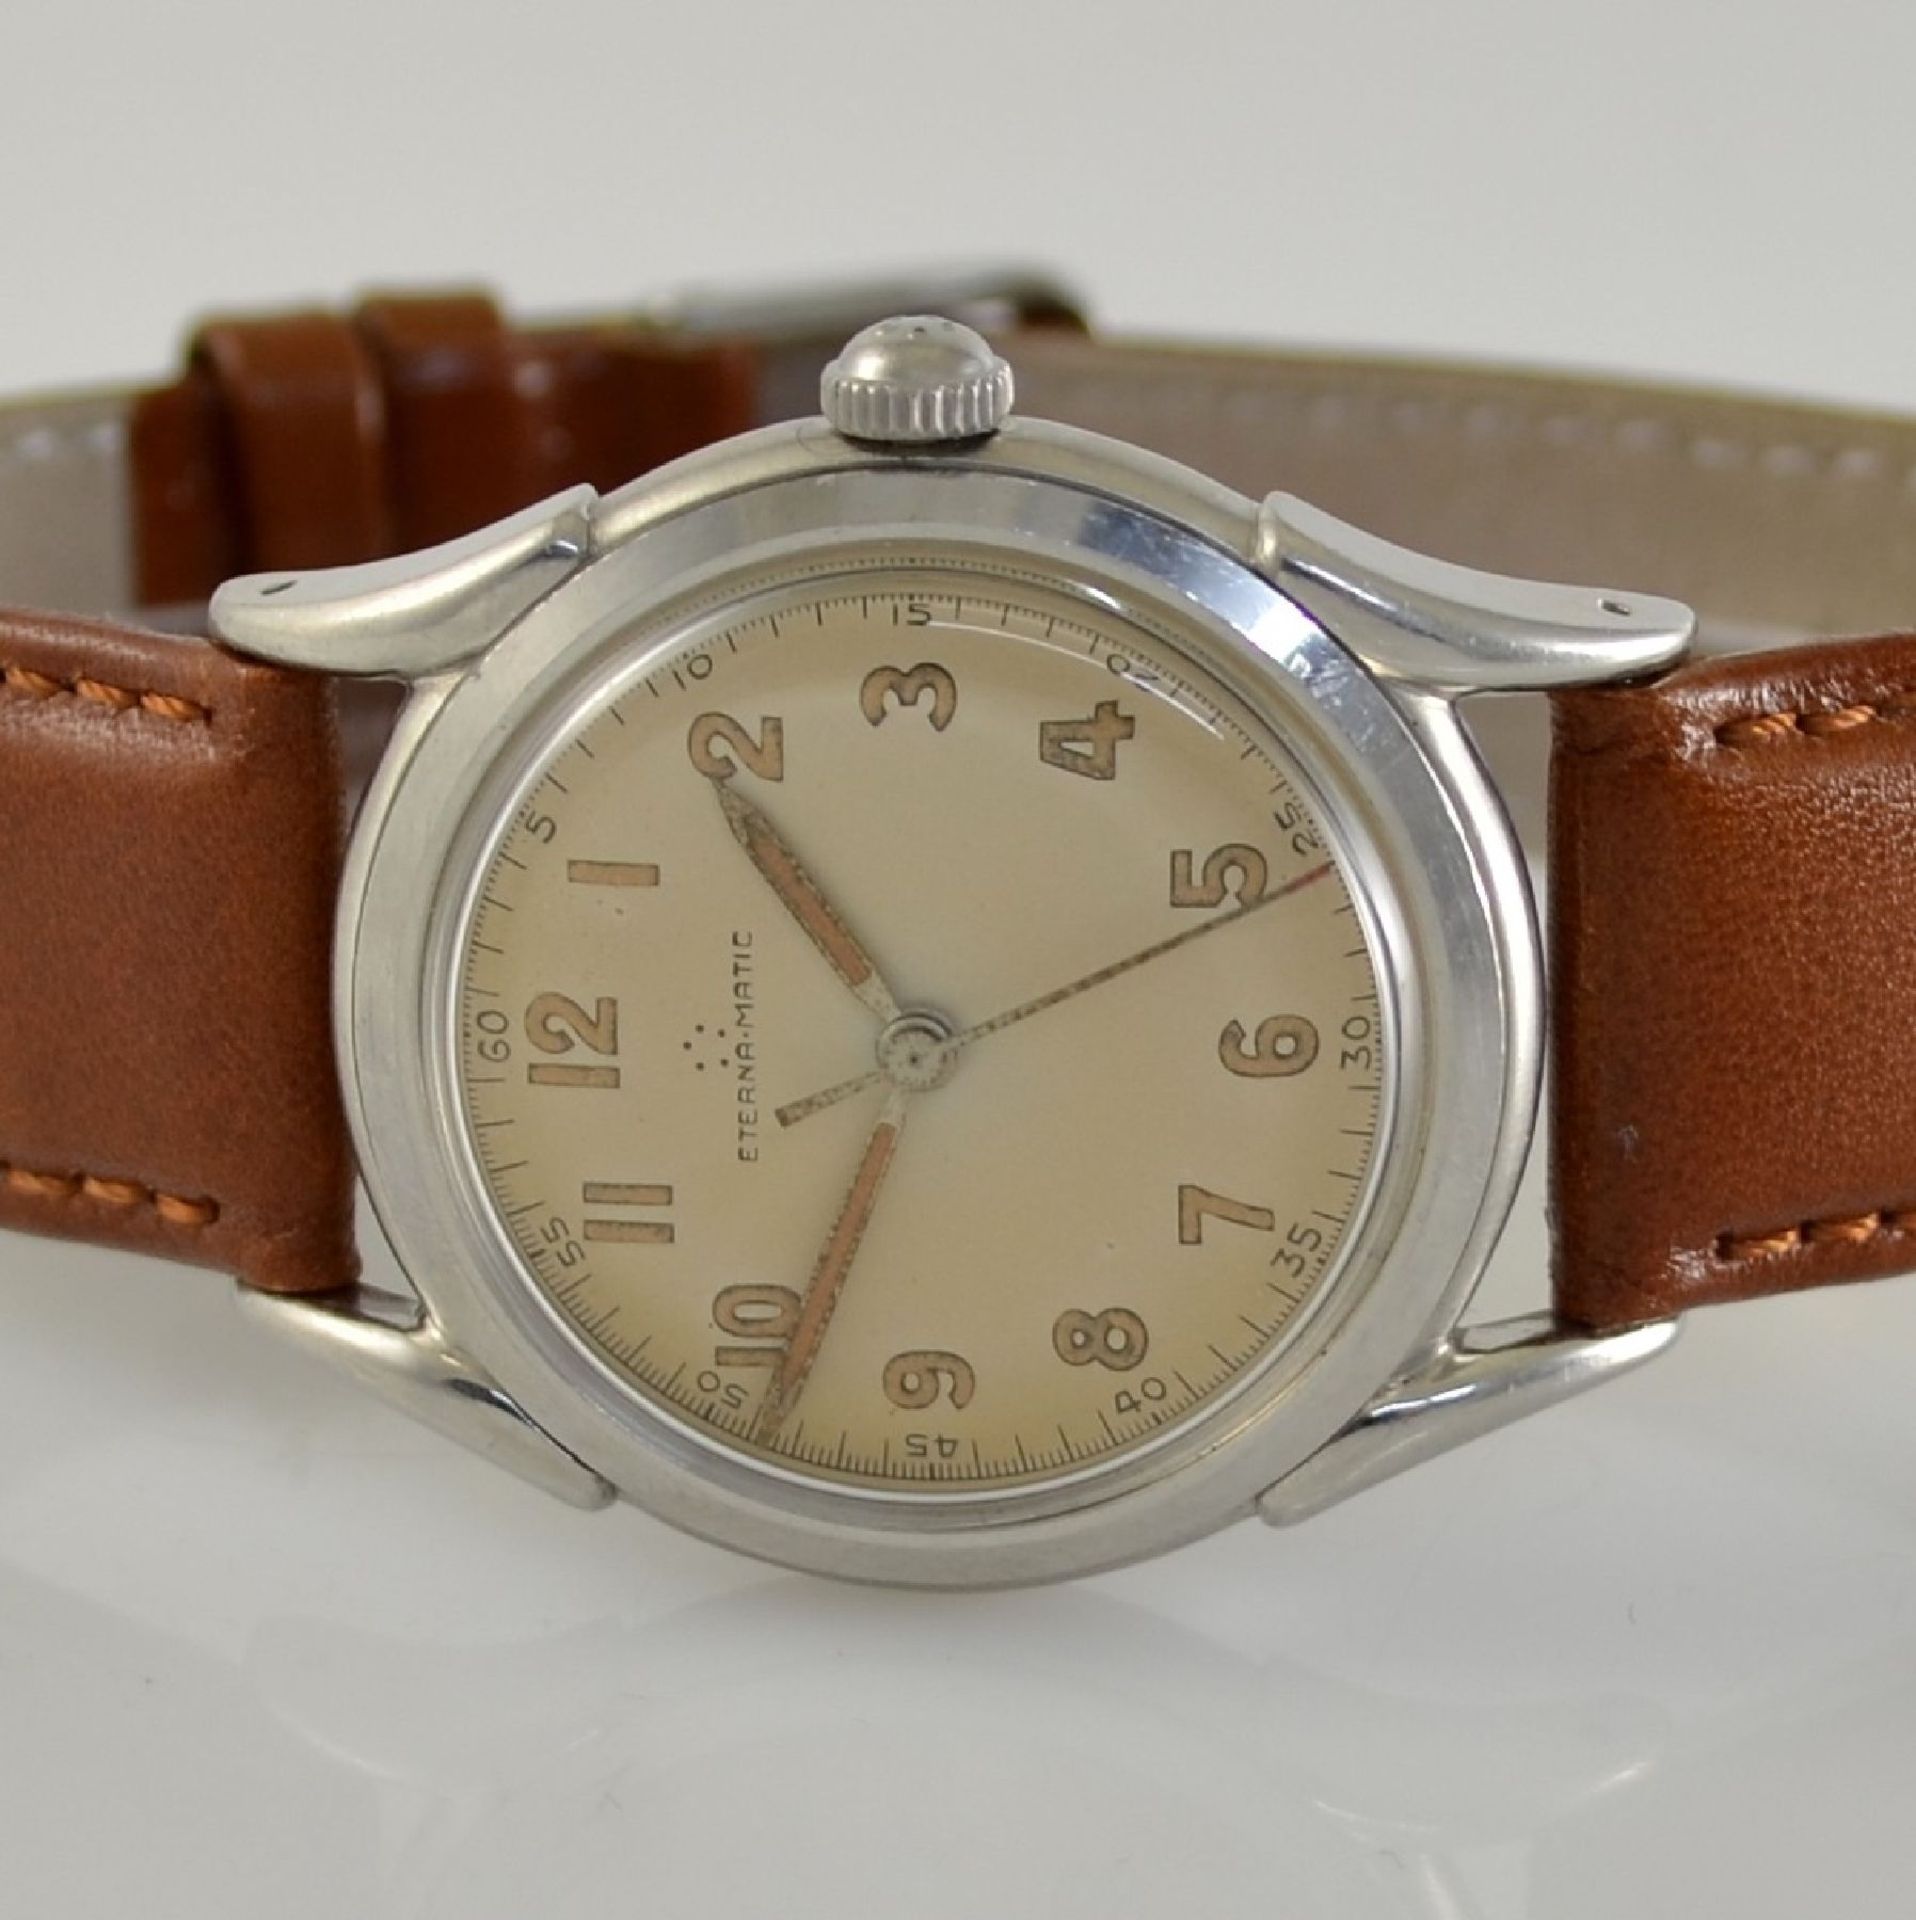 ETERNA-MATIC 2 wristwatches in steel, Switzerland around 1950, screwed down cases with unusual lugs, - Bild 2 aus 13